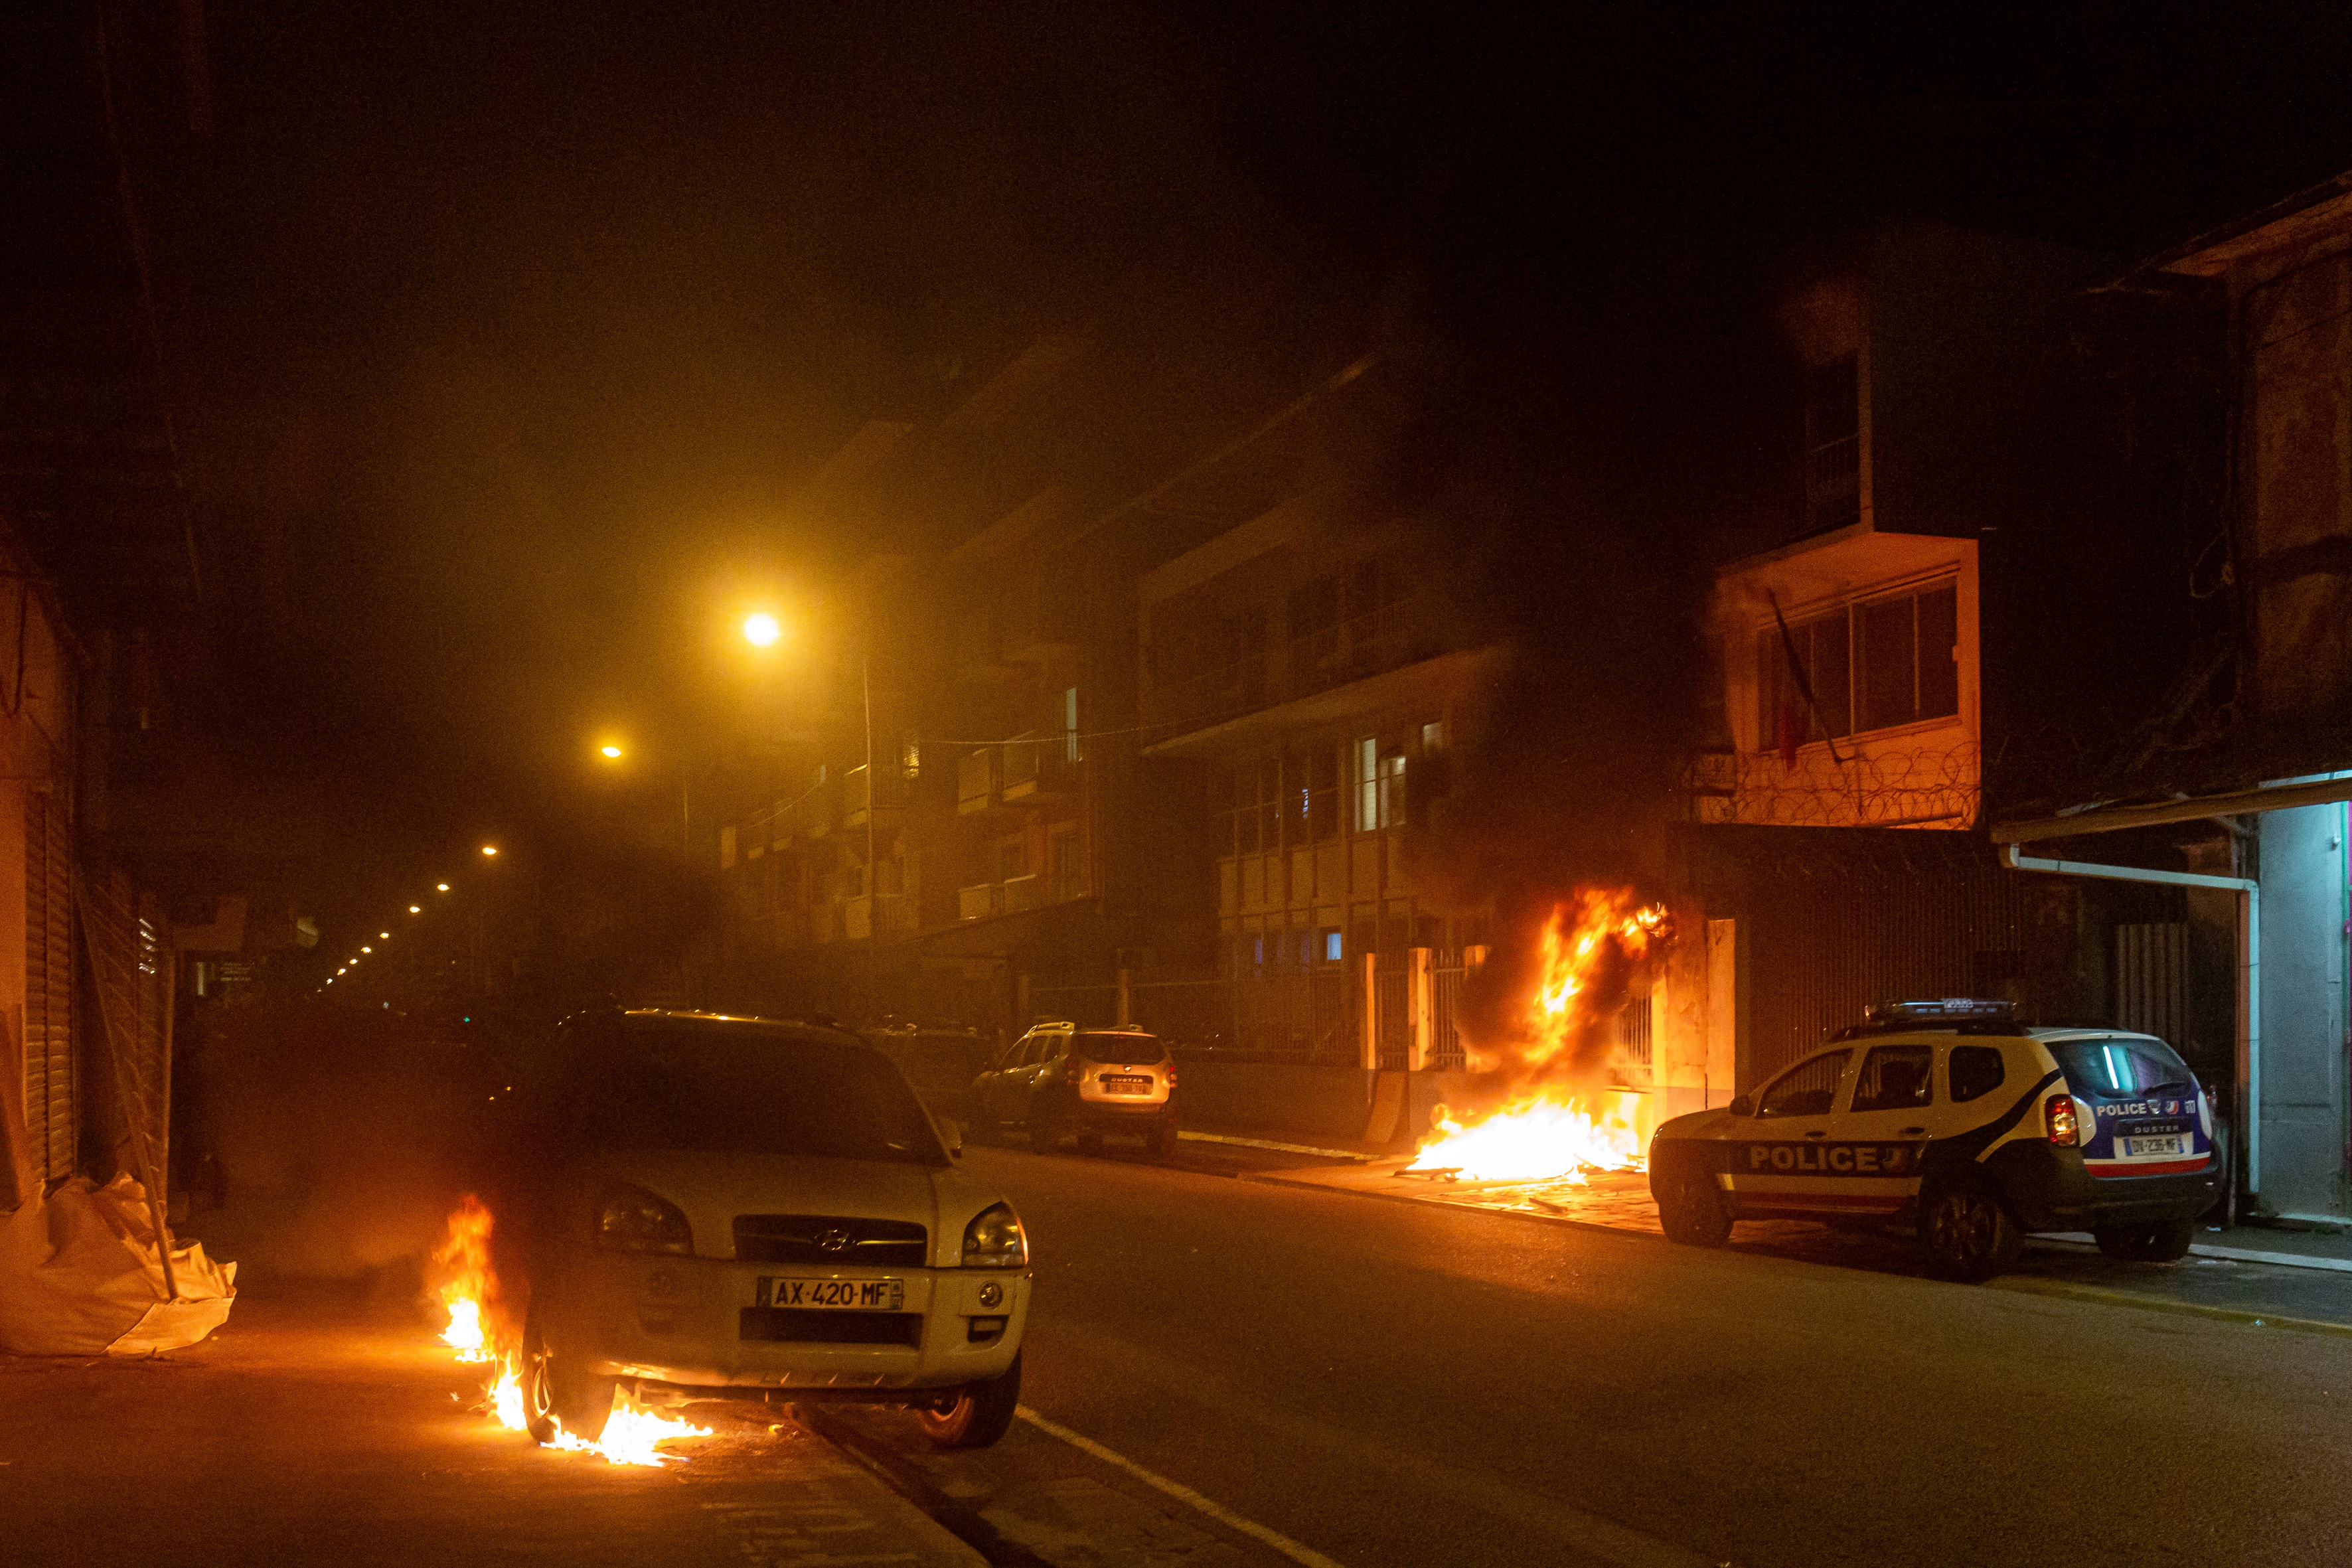 Des violences se sont aussi produites dans des départements d'Outre-mer, à La Réunion, en Martinique et en Guyane, selon les autorités. (Illustration) Jody Amiet / AFP